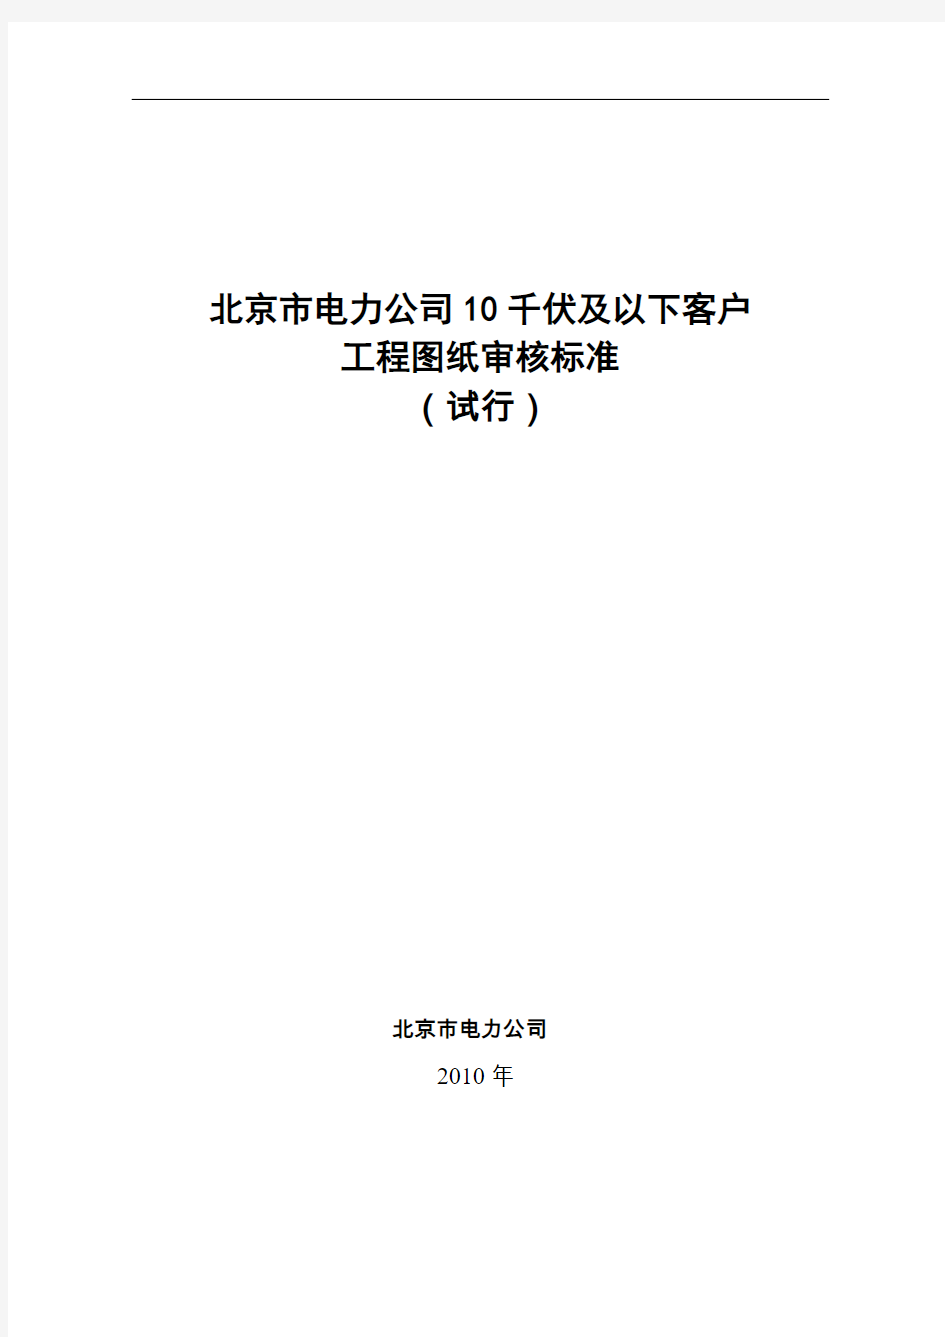 北京市电力公司10千伏及以下客户工程图纸审核标准(试行)2013-2-25